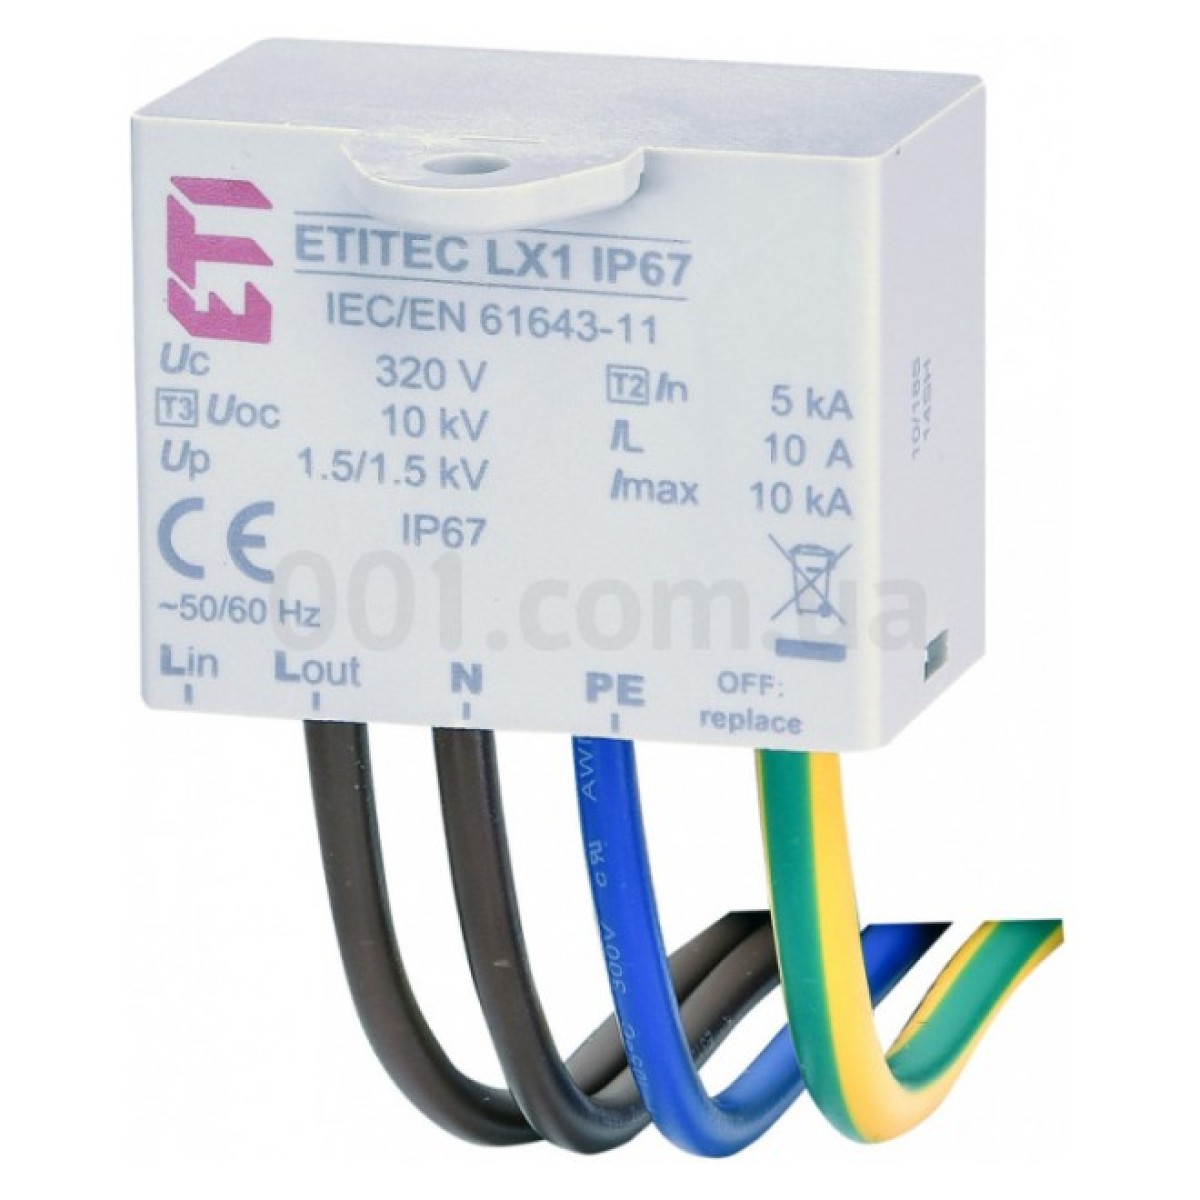 Обмежувач перенапруги ETITEC LX1 IP67, ETI 256_256.jpg